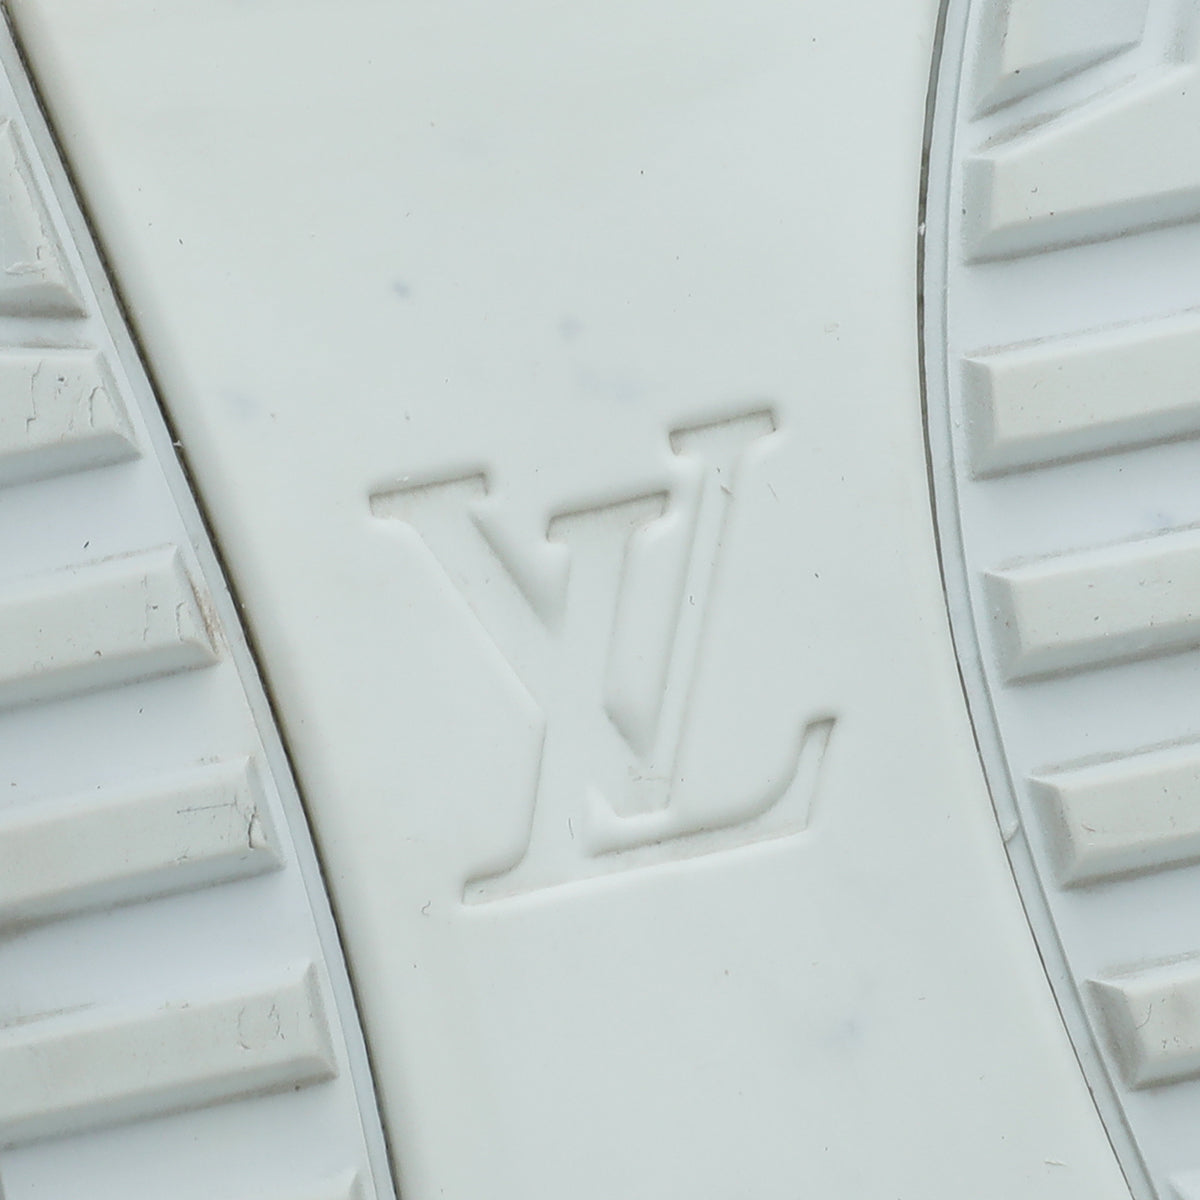 Louis Vuitton Run Away Sneaker SS19